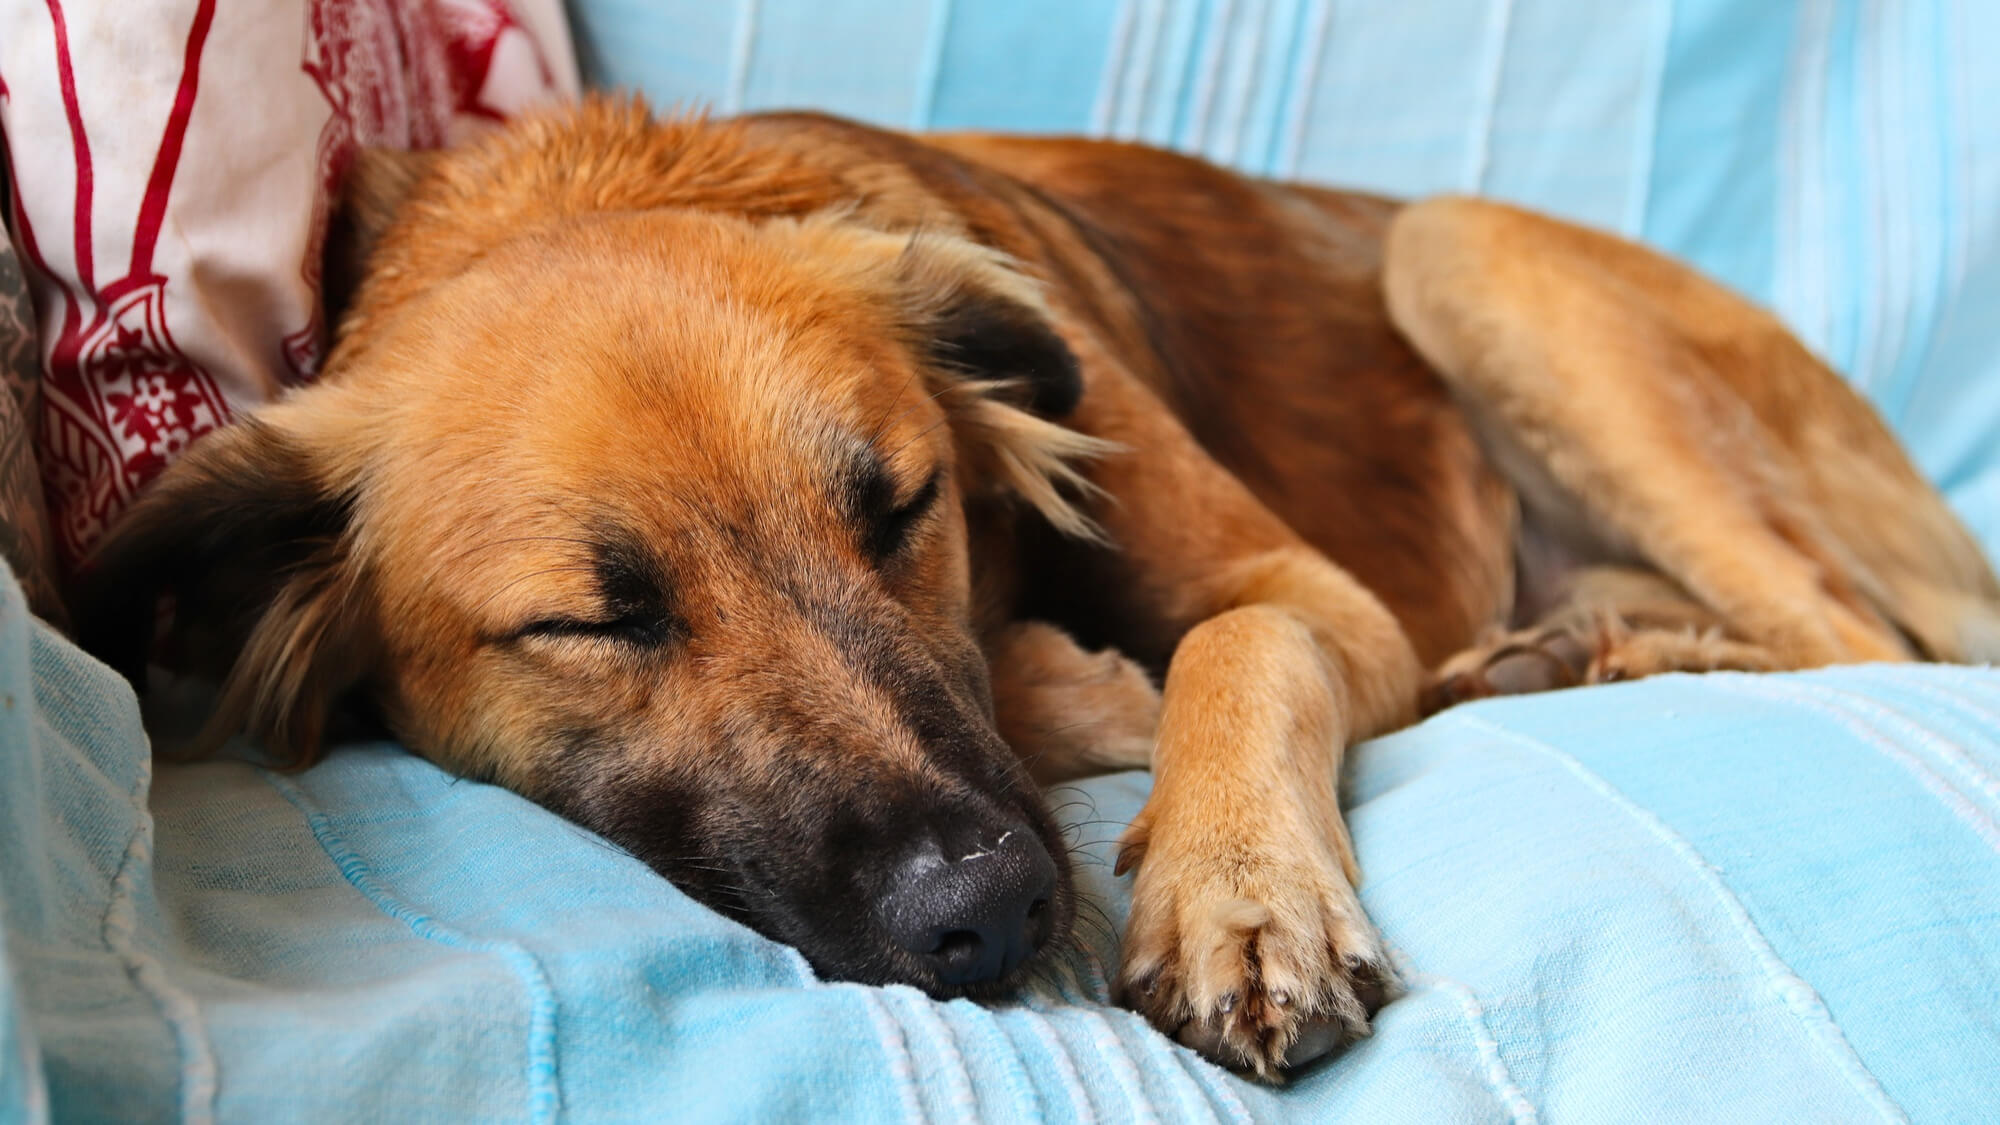 Cachorros dormindo: significado das posições, latidos e sonhos